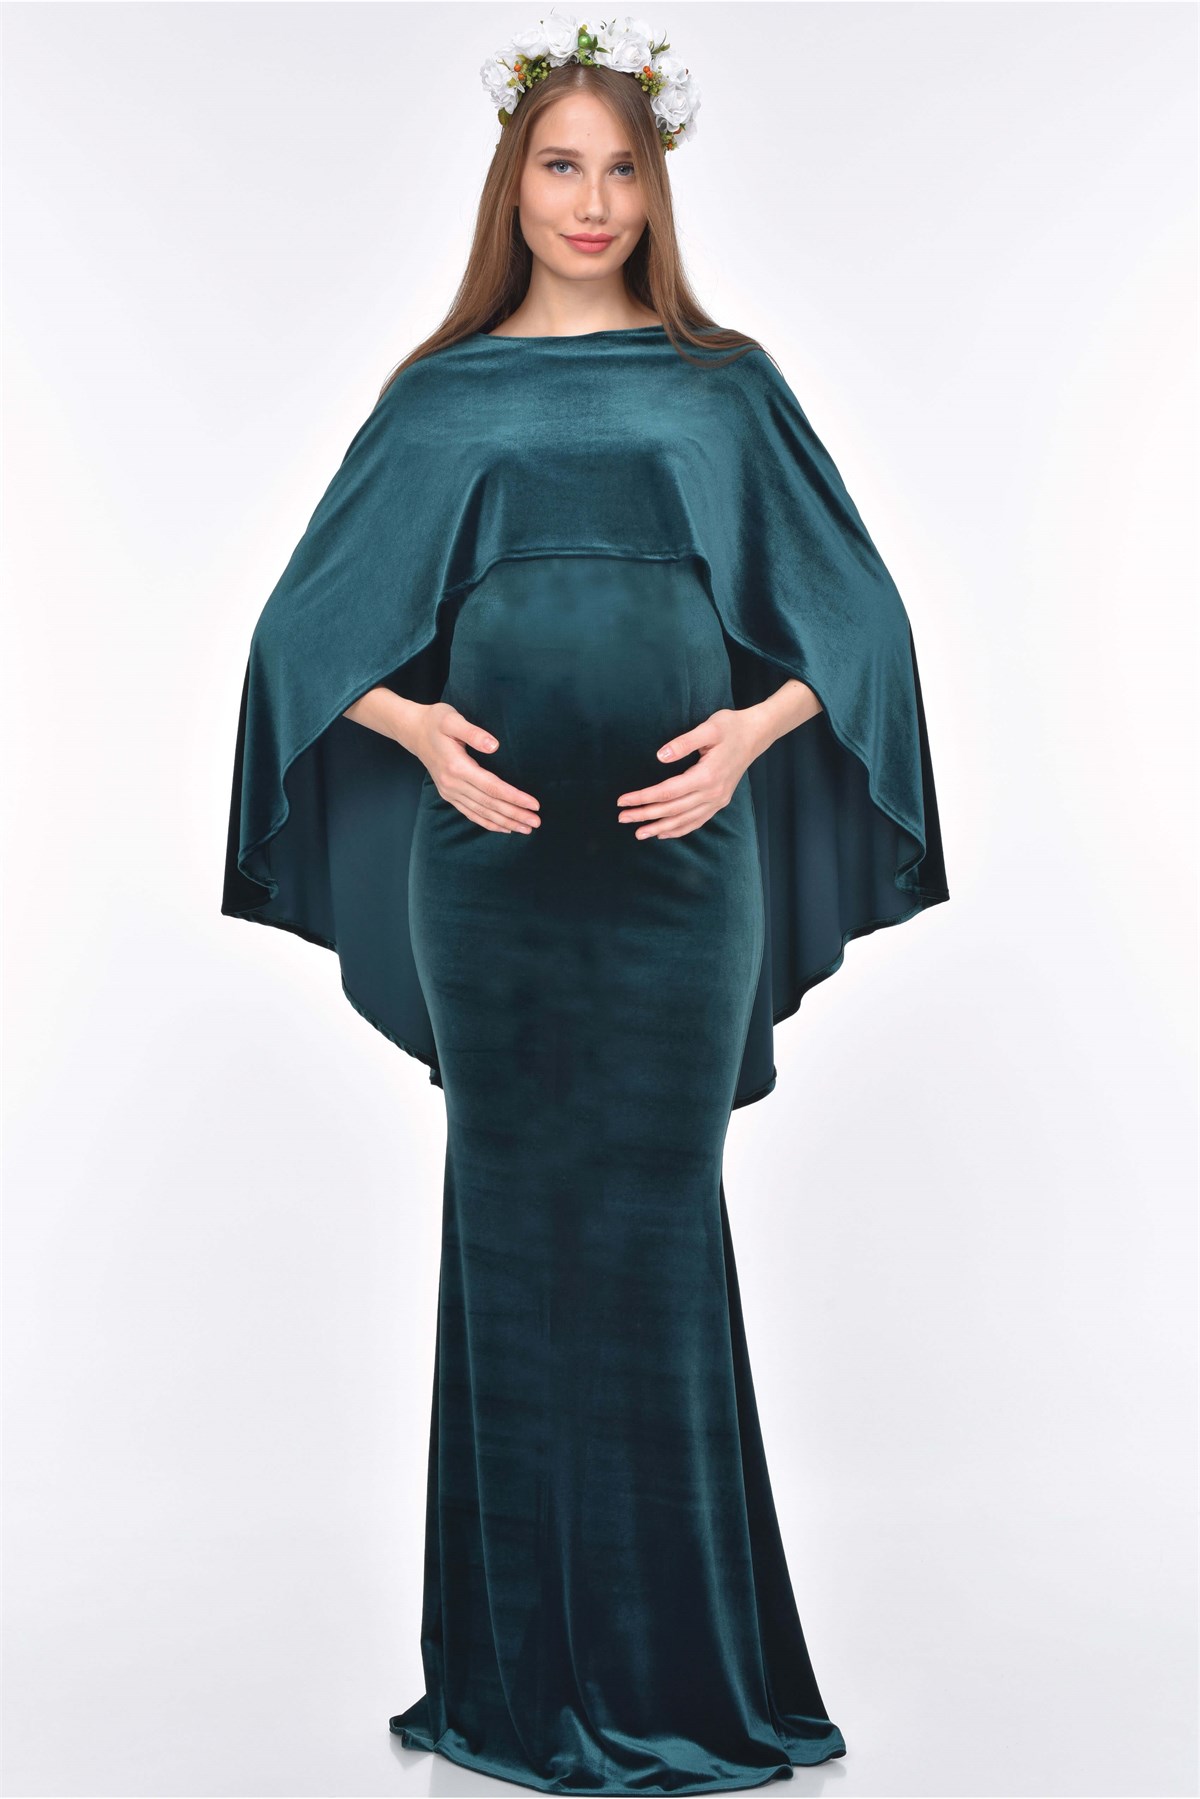 Moda Labio | Pelerinli Kadife Balık Zümrüt Yeşili Hamile Elbisesi